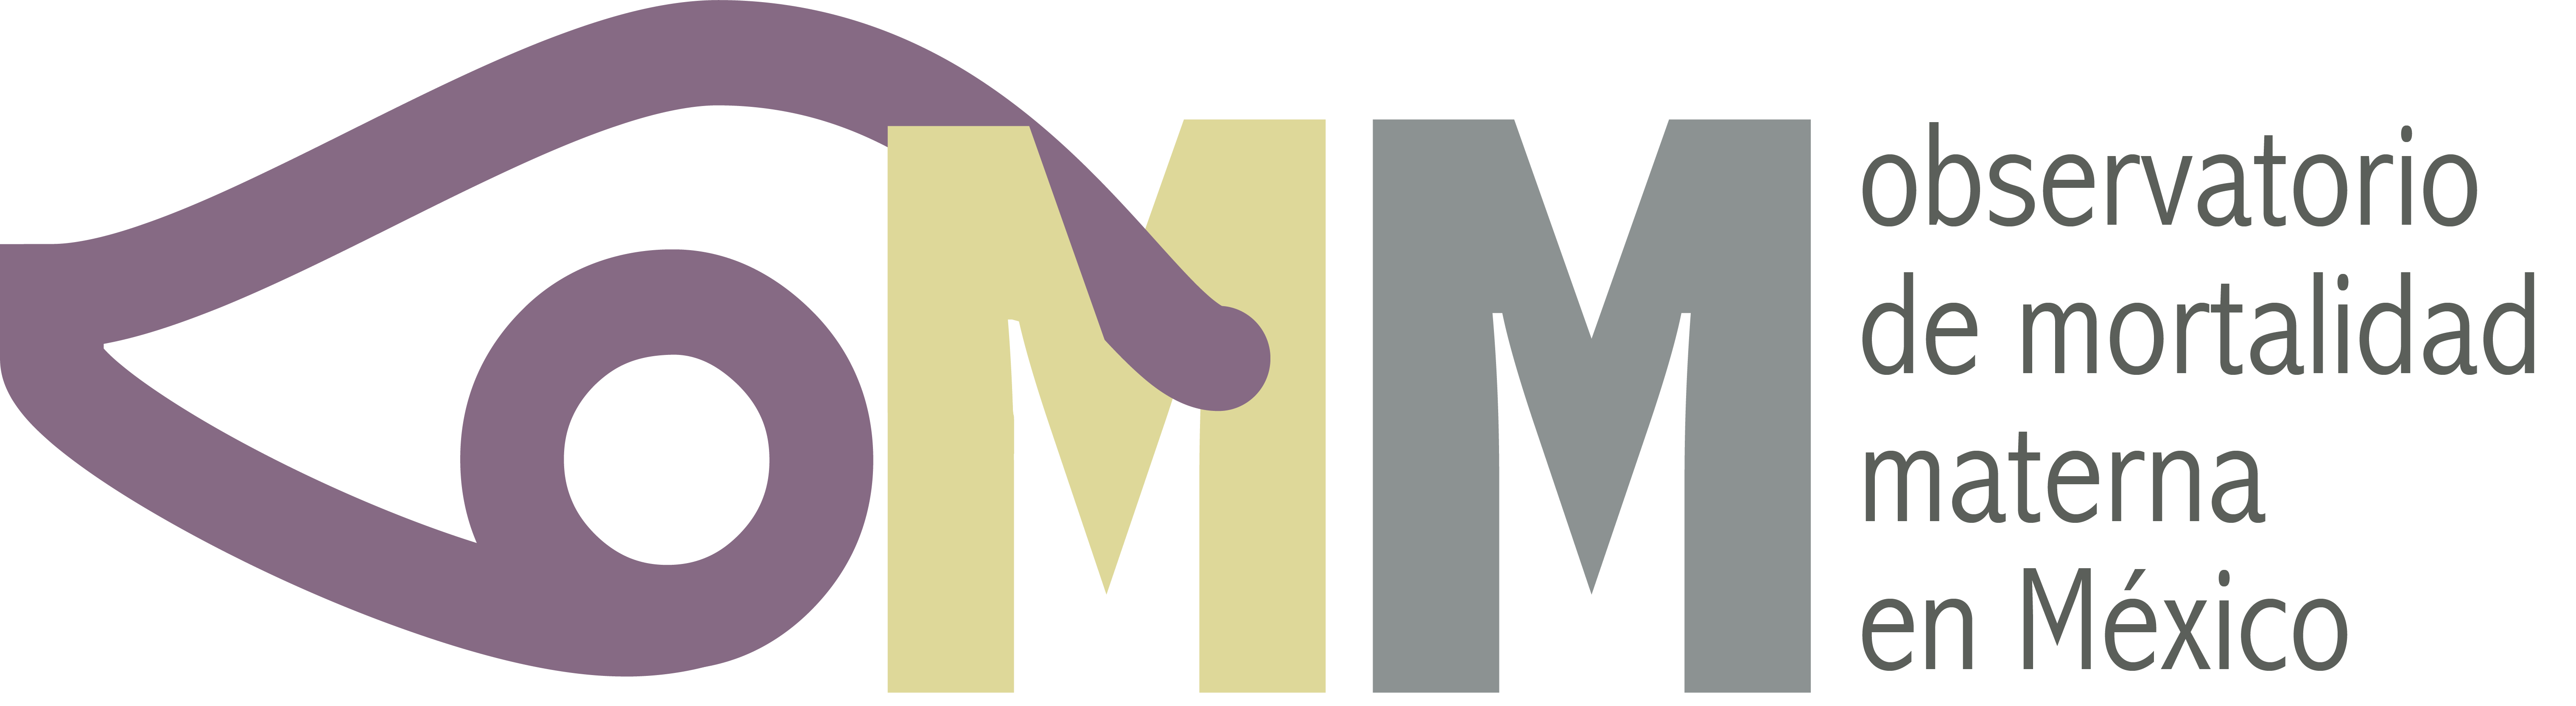 OMM Logo - Observatorio de Mortalidad Materna (OMM) Not Brides